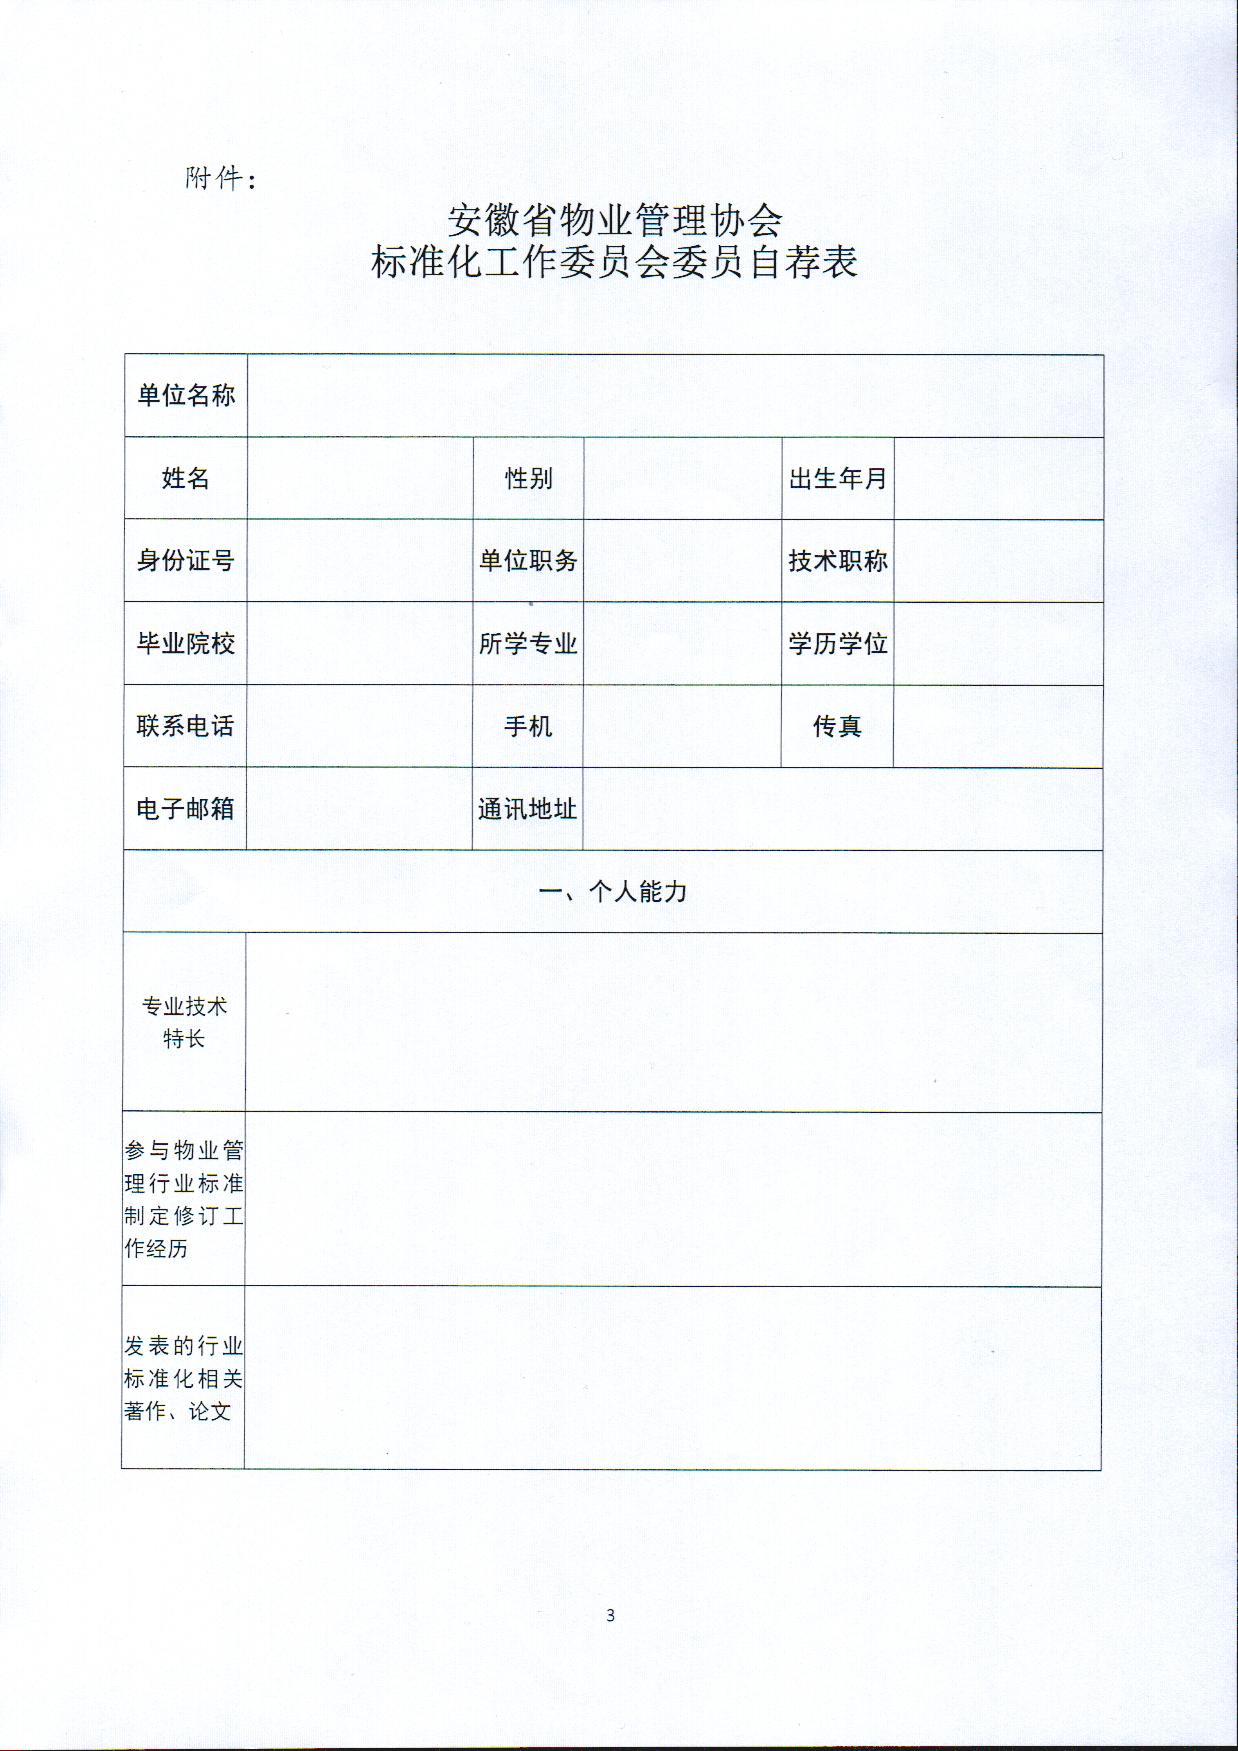 关于推荐安徽省物业管理协会标准化工作委员会委员的通知3.jpg